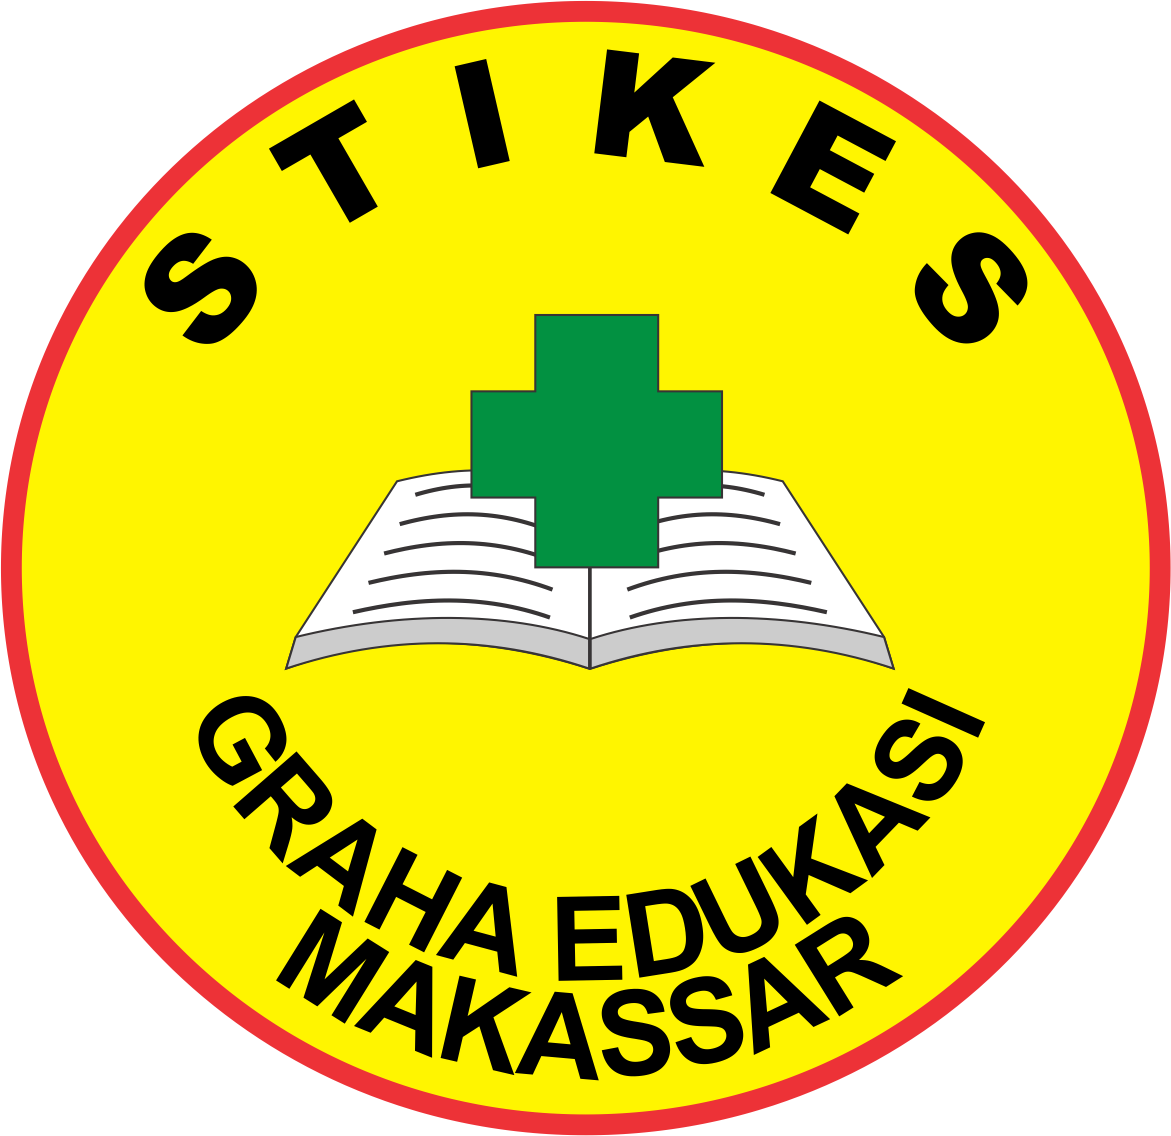 logo STIKES Graha Edukasi